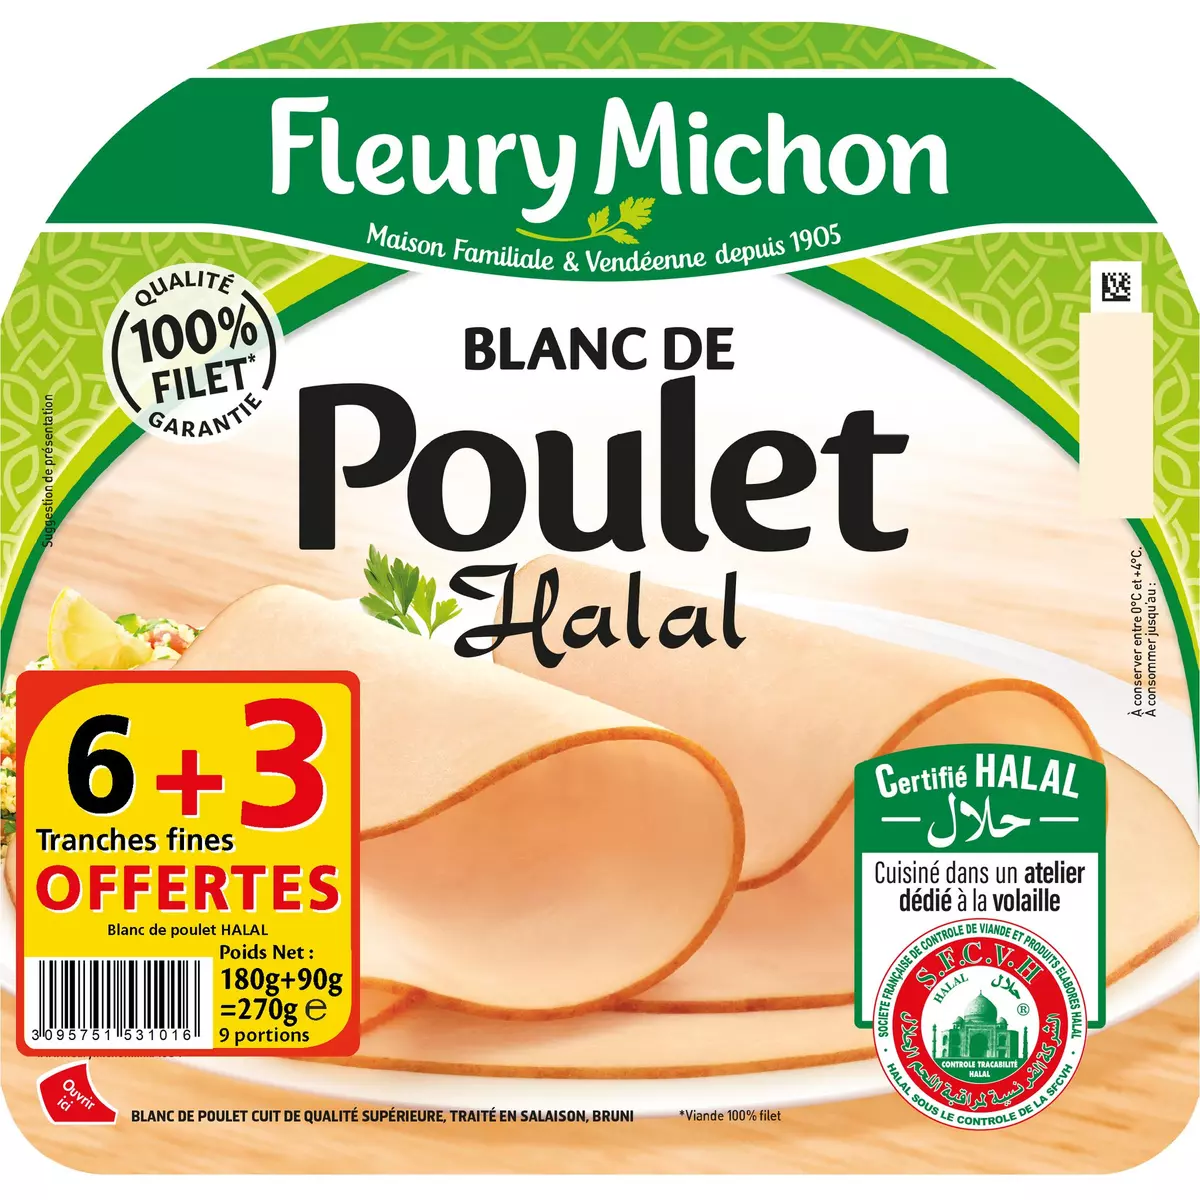 FLEURY MICHON Blanc de poulet halal 6 tranches +3 offertes 270g